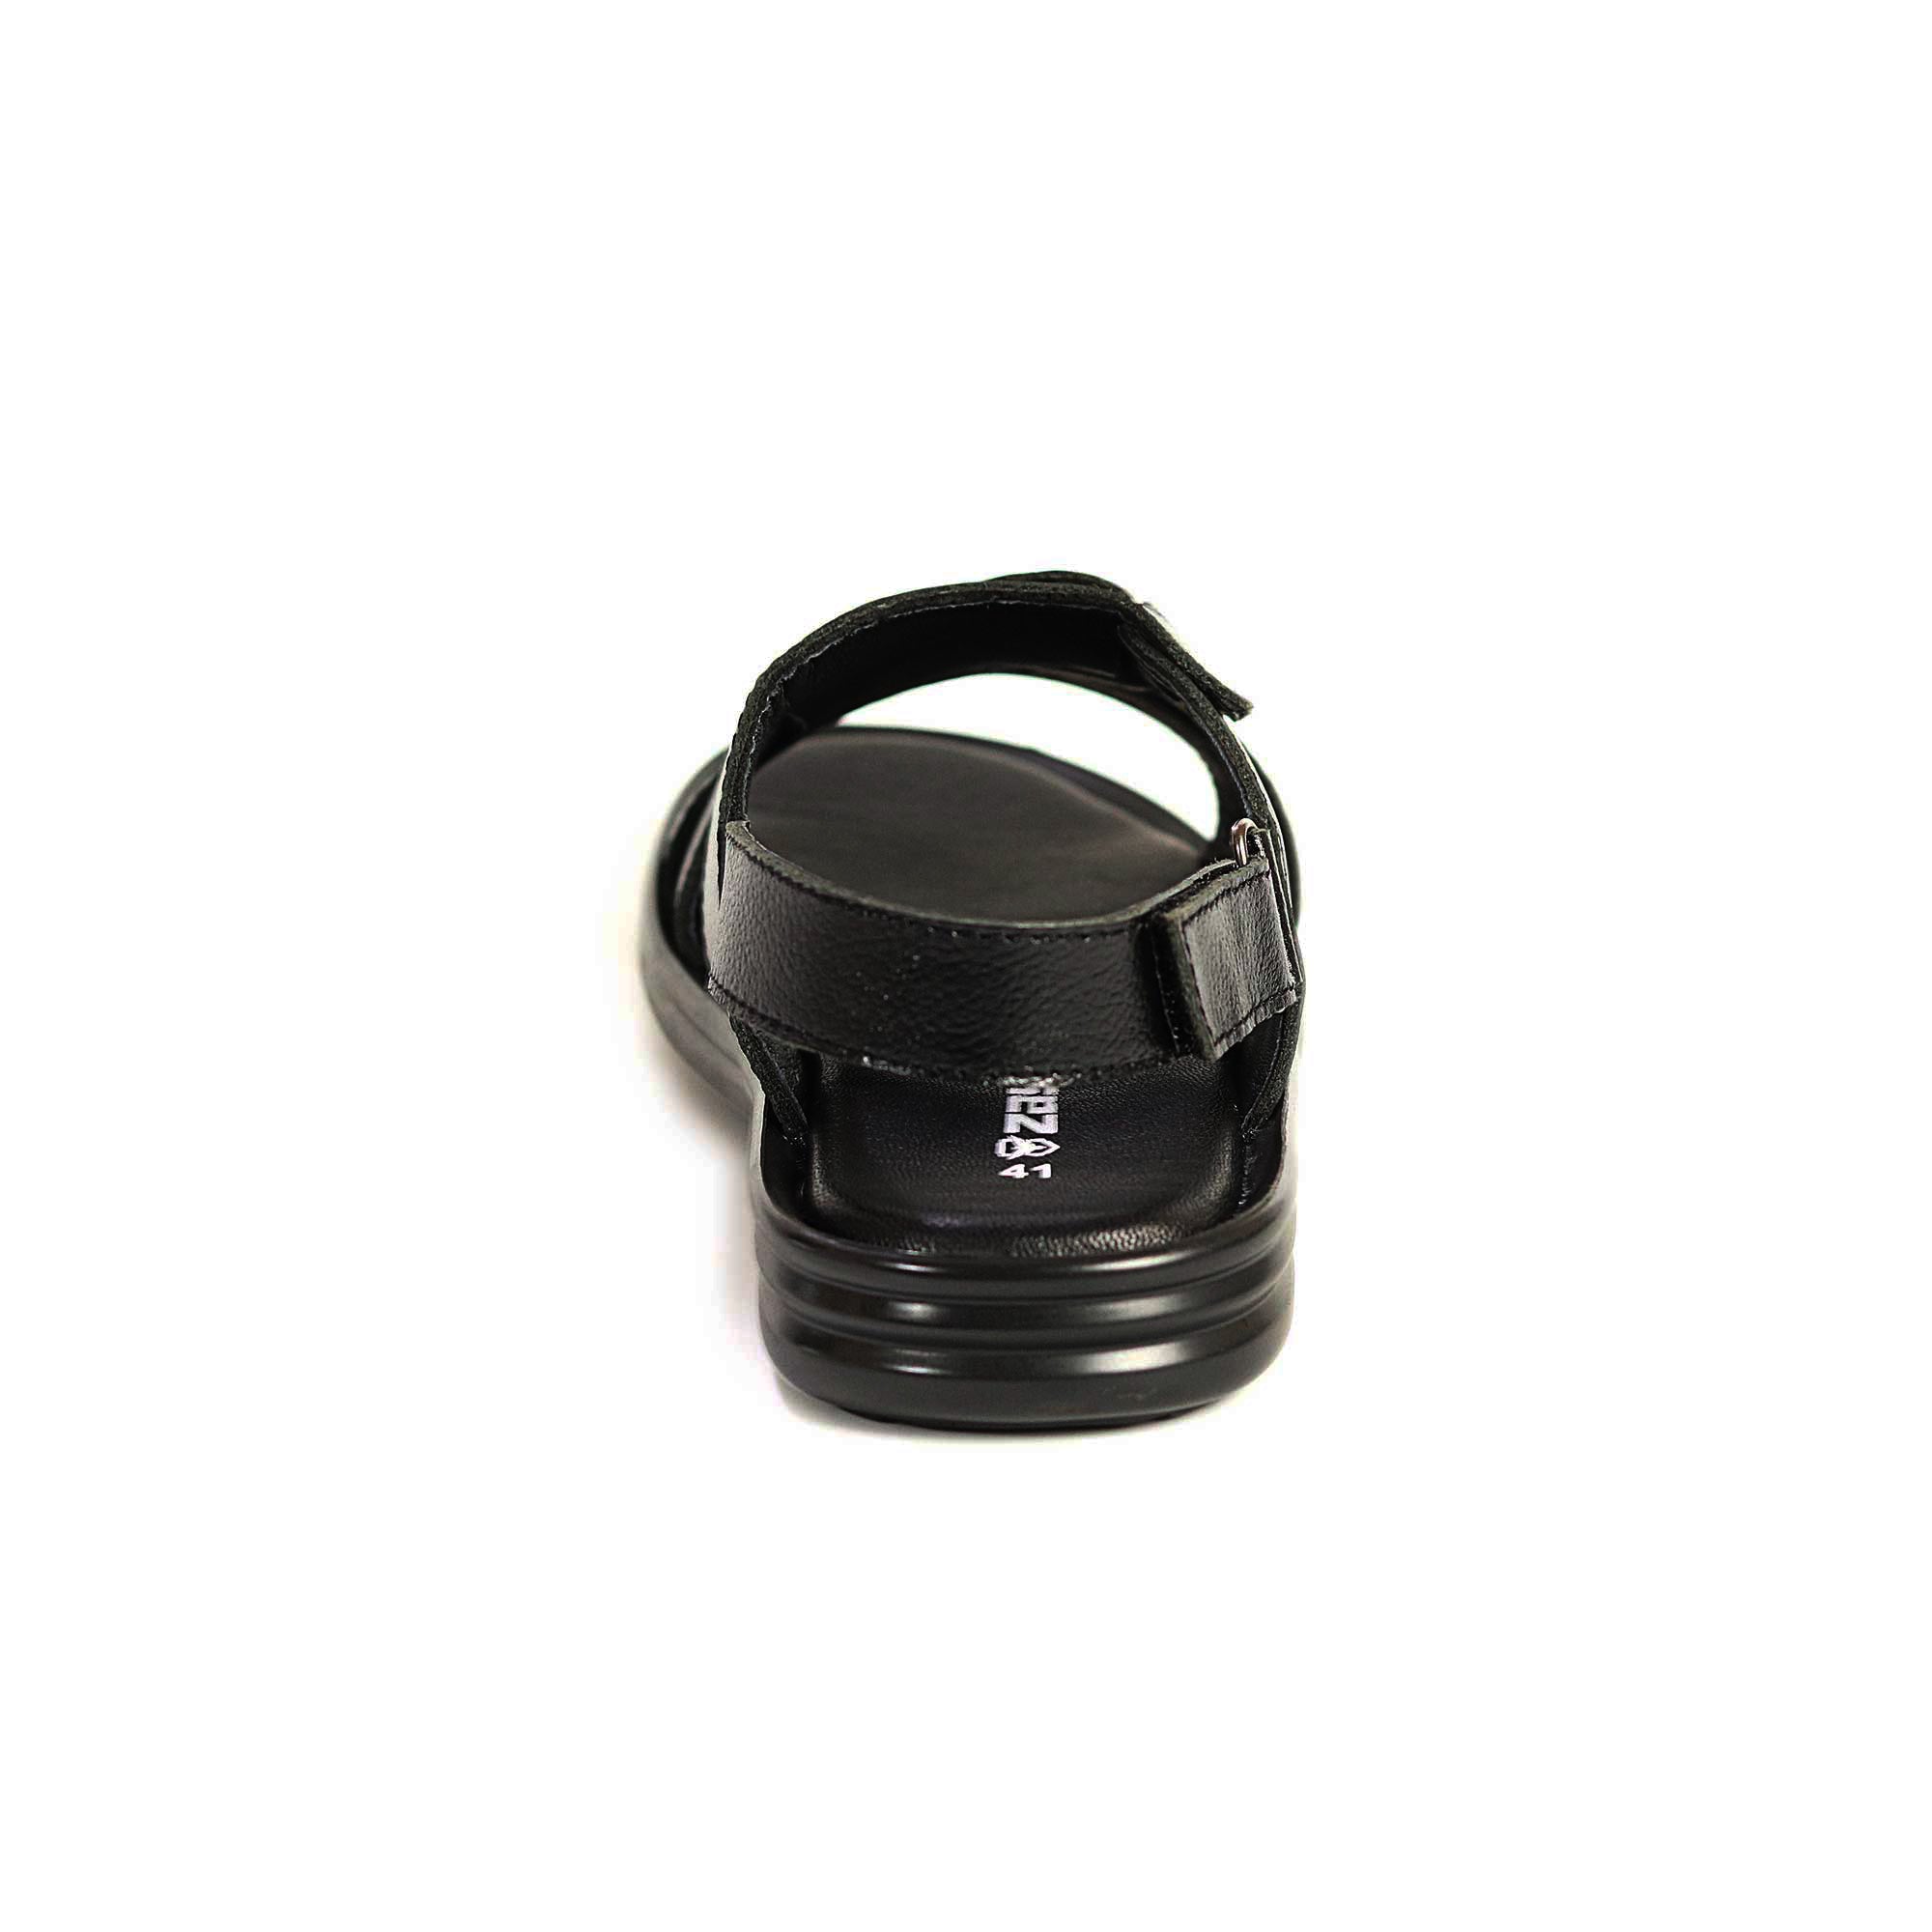 Zays Leather Sandal For Men (Black) - AD68